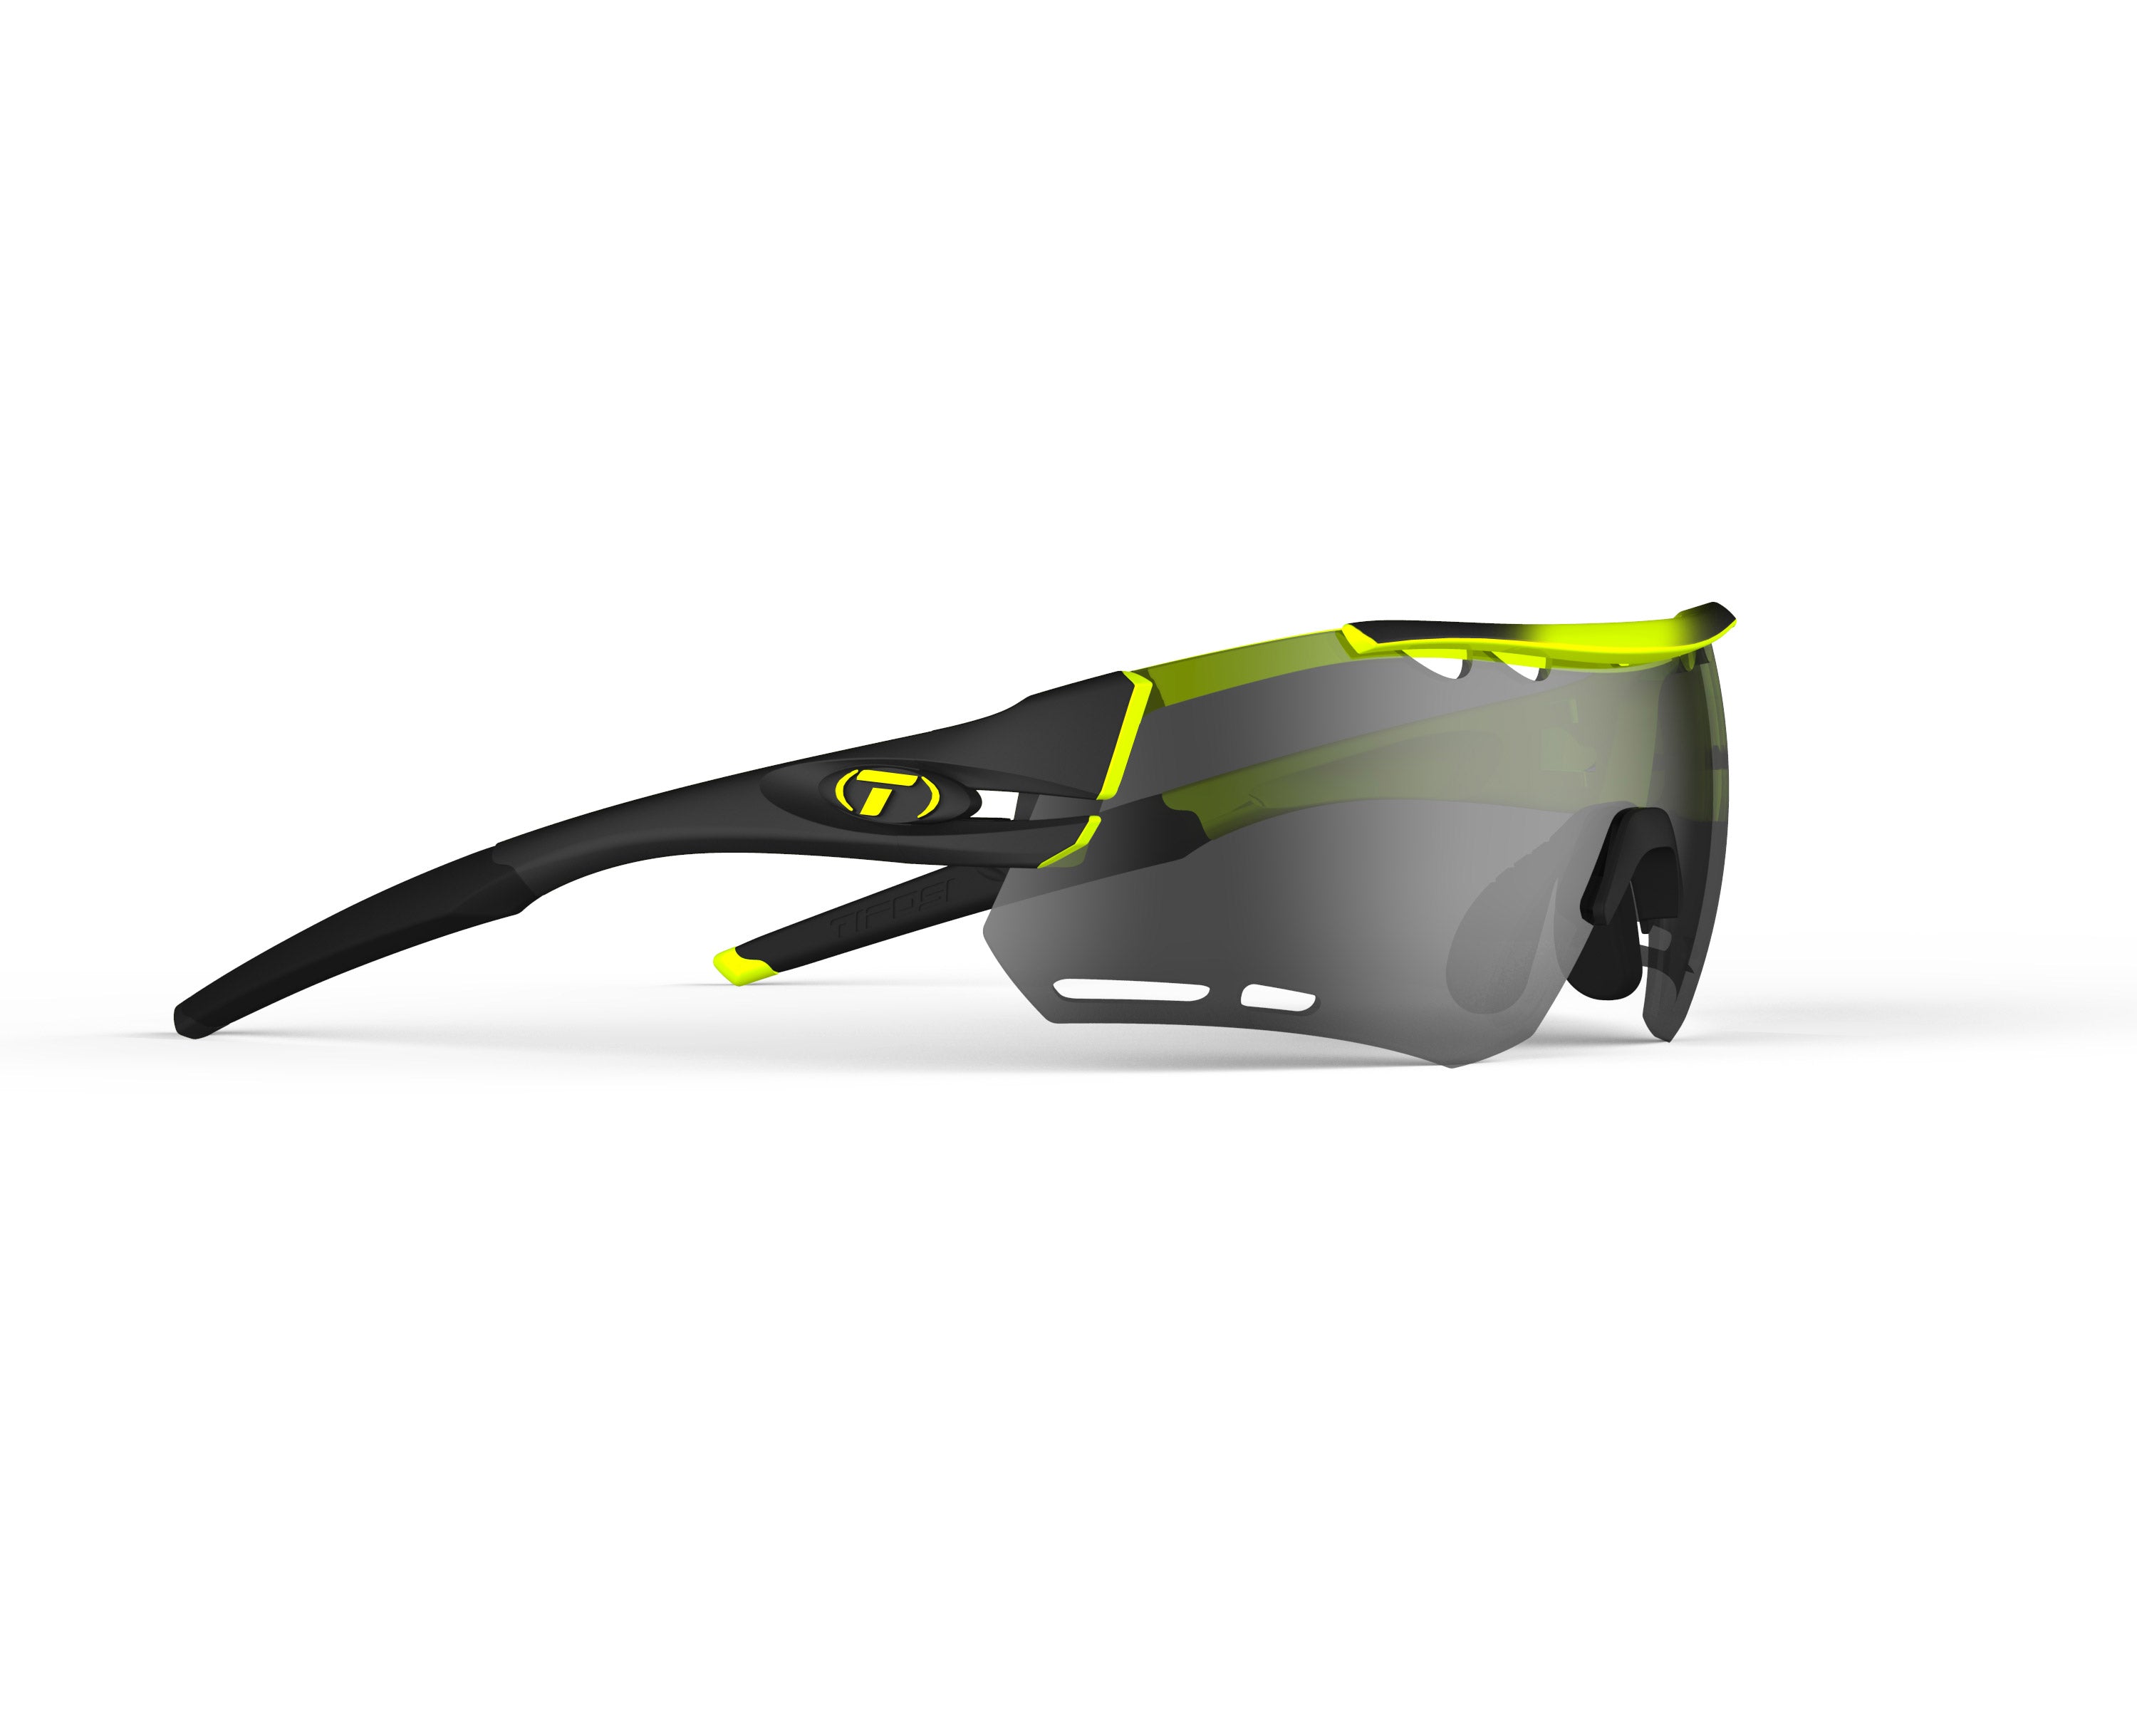 Gafas de sol TIFOSI Alliant Race Neon (incluye varias lentes)